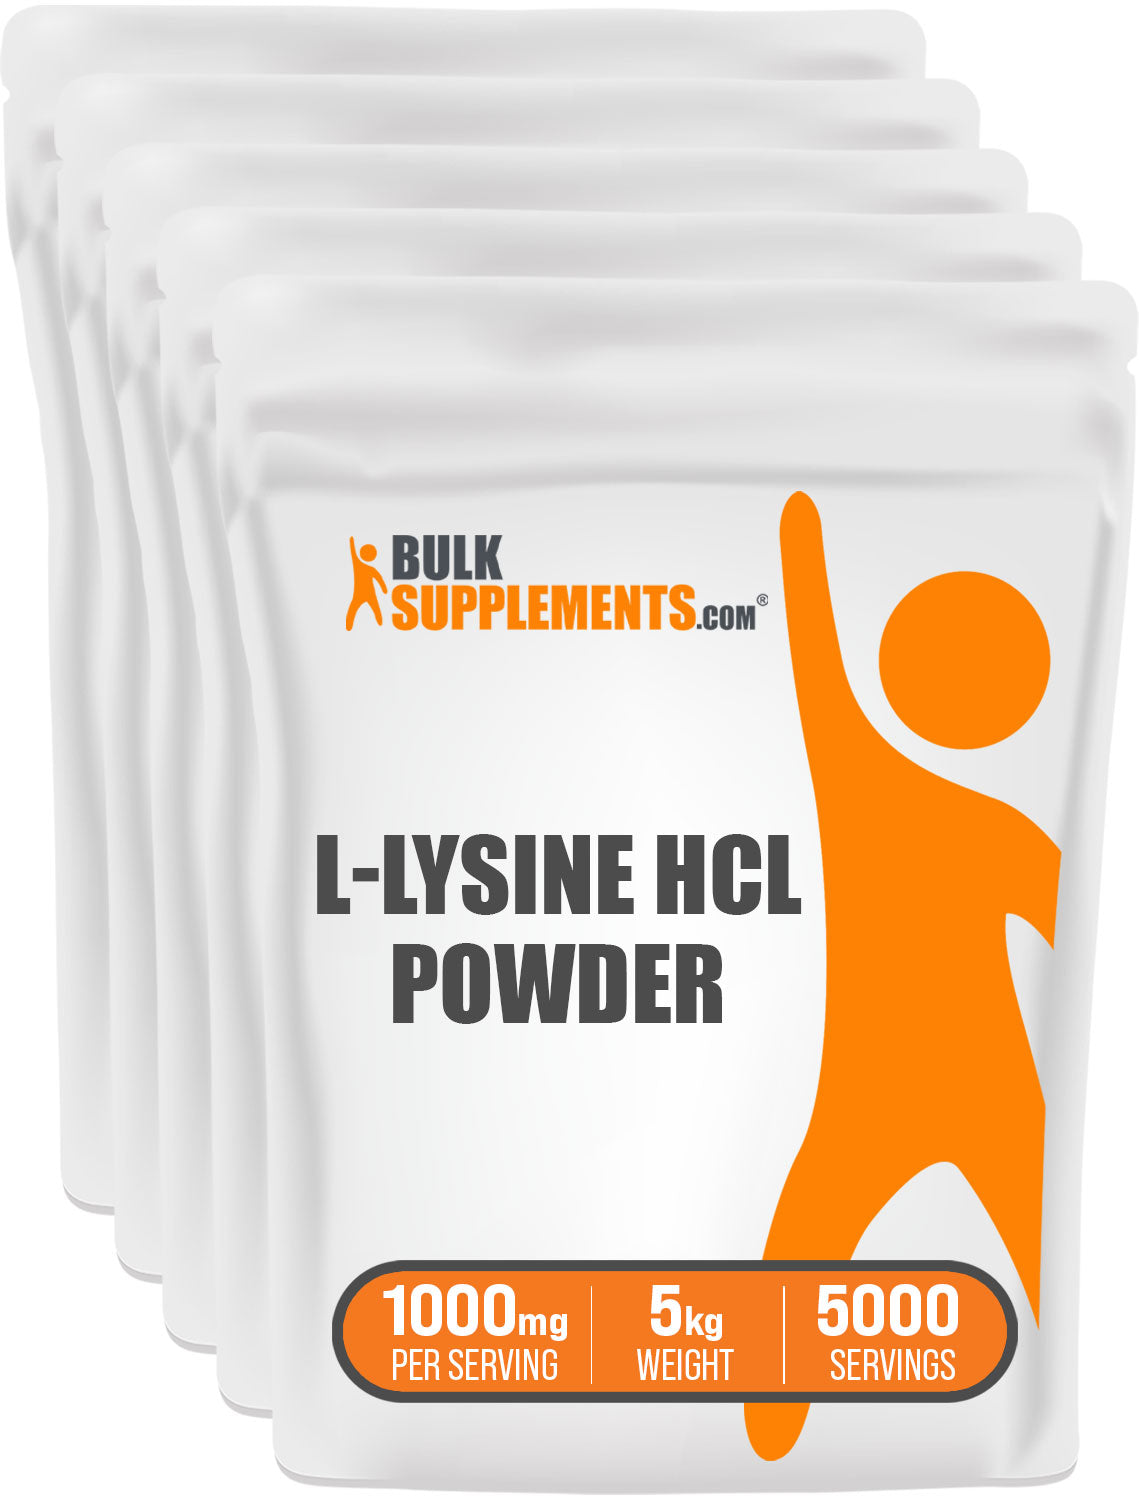 L-Lysine HCl Powder 5kg